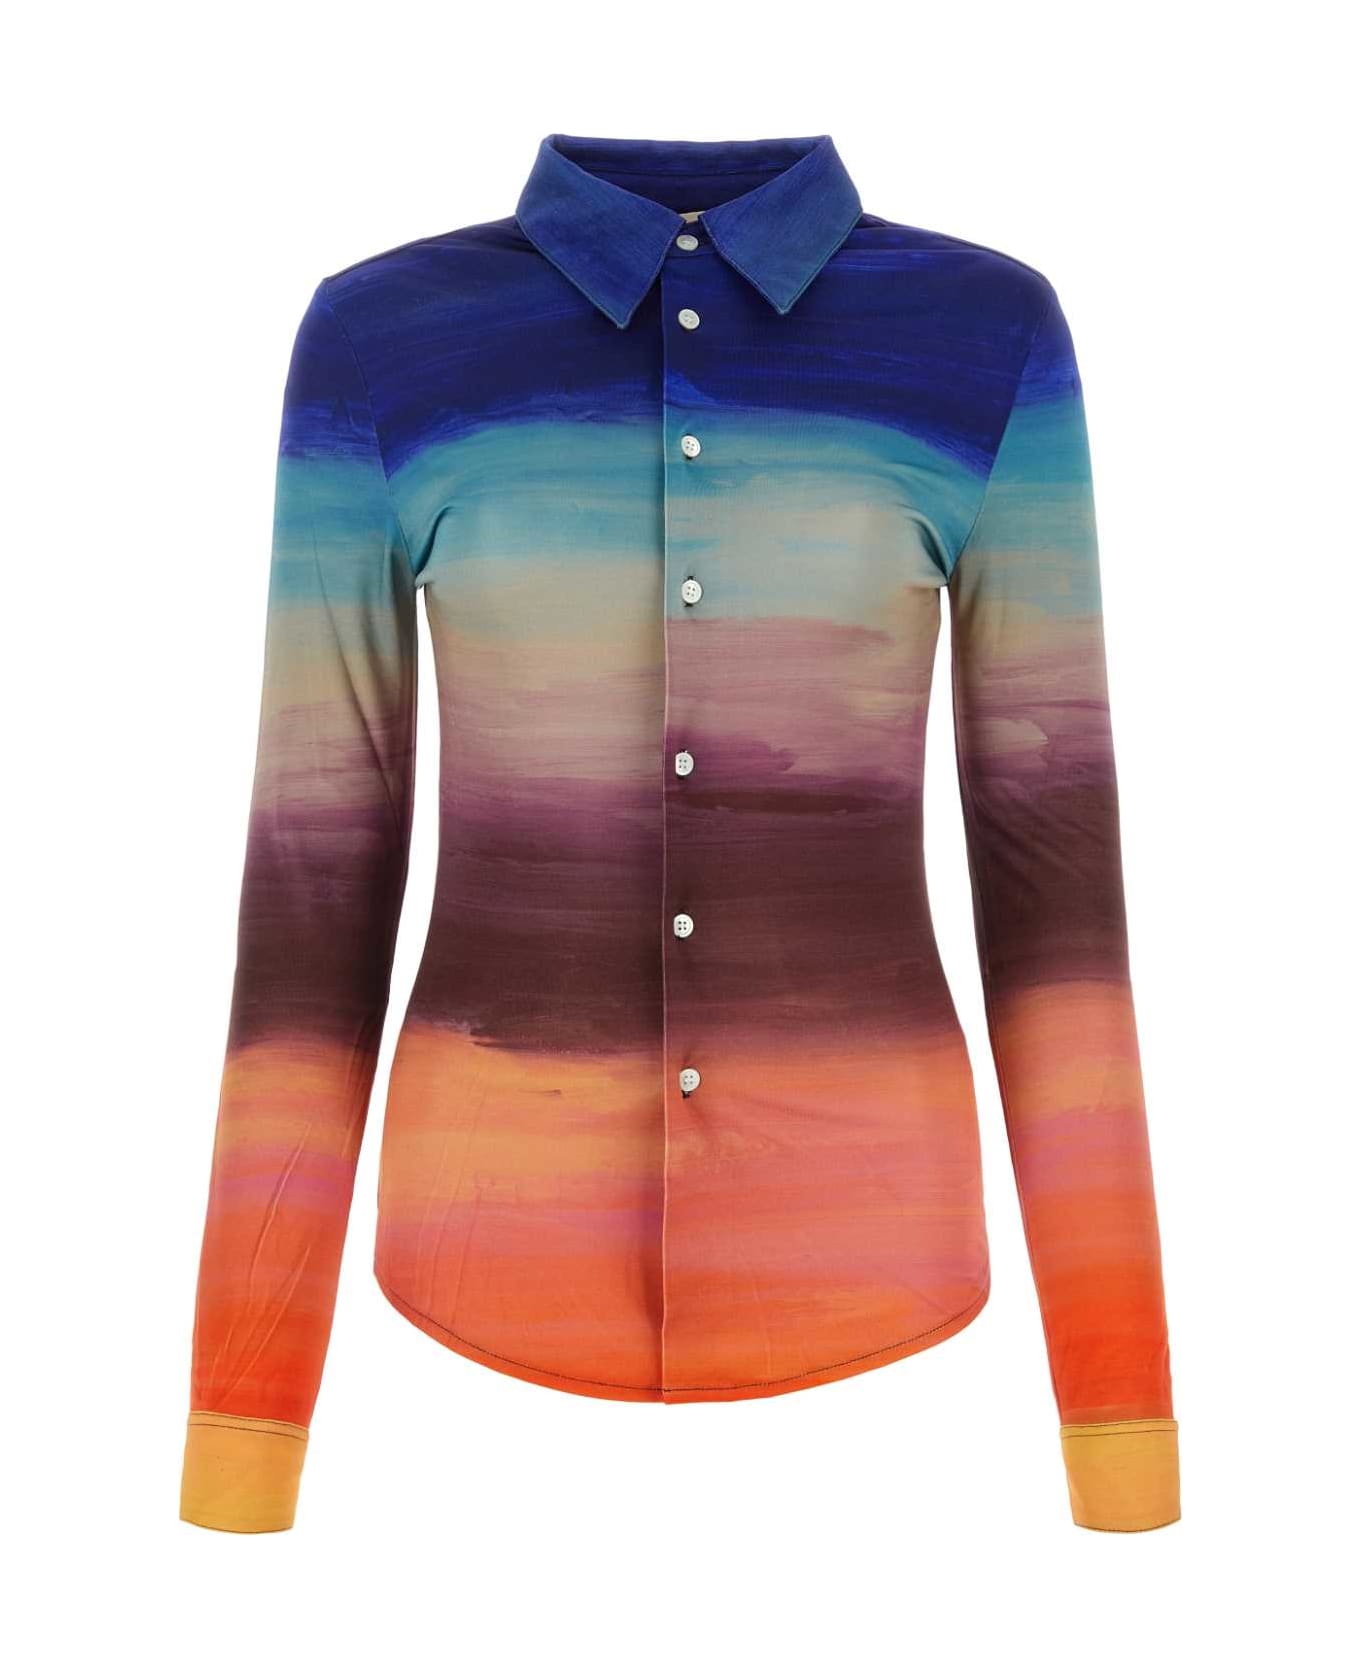 Marni Multicolor Stretch Viscose Shirt - MULTICOLOR